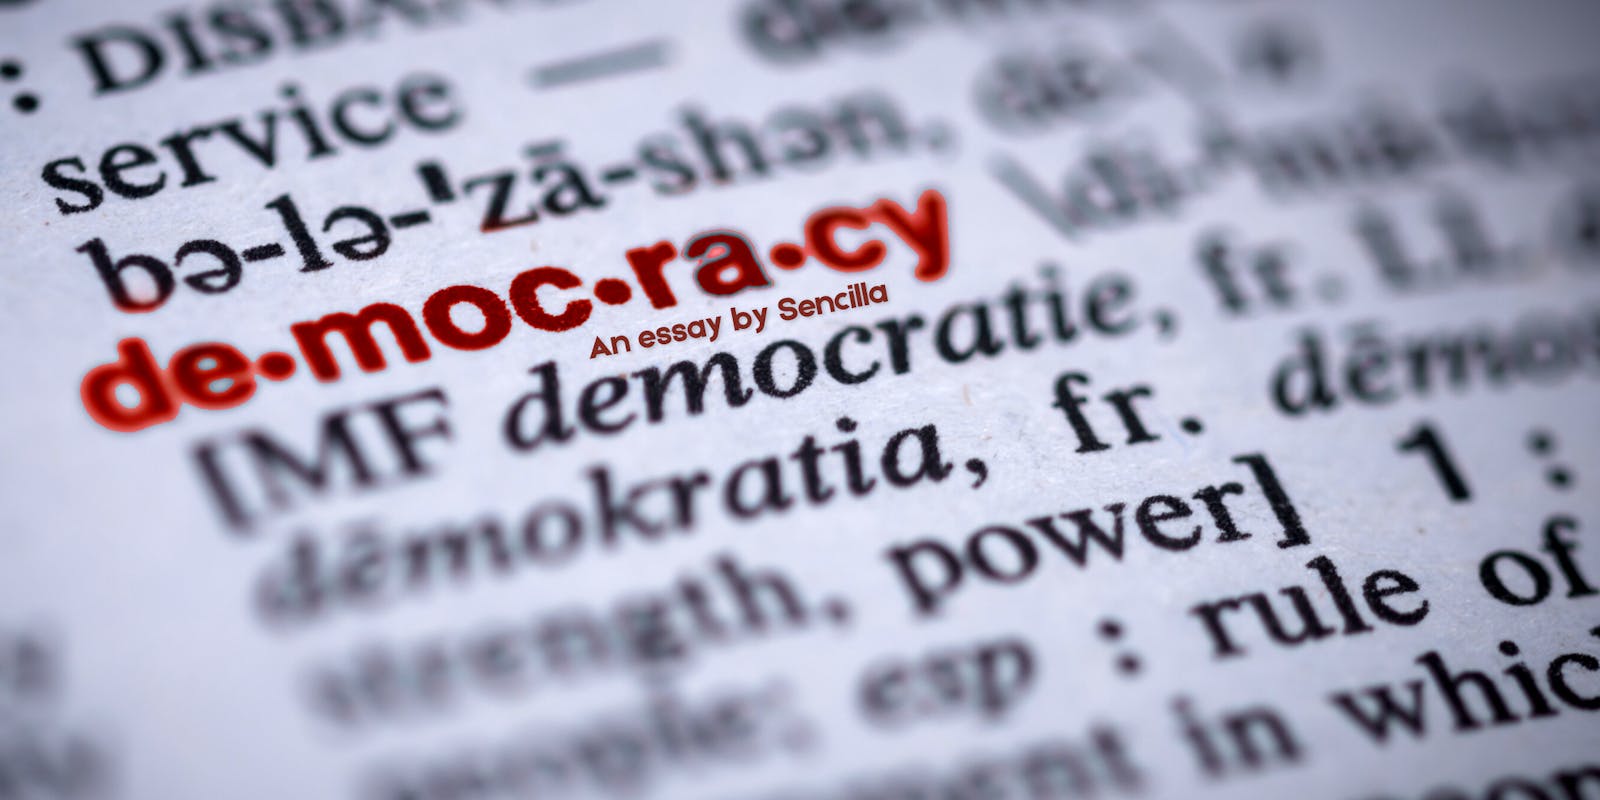 Democracy by Sencilla